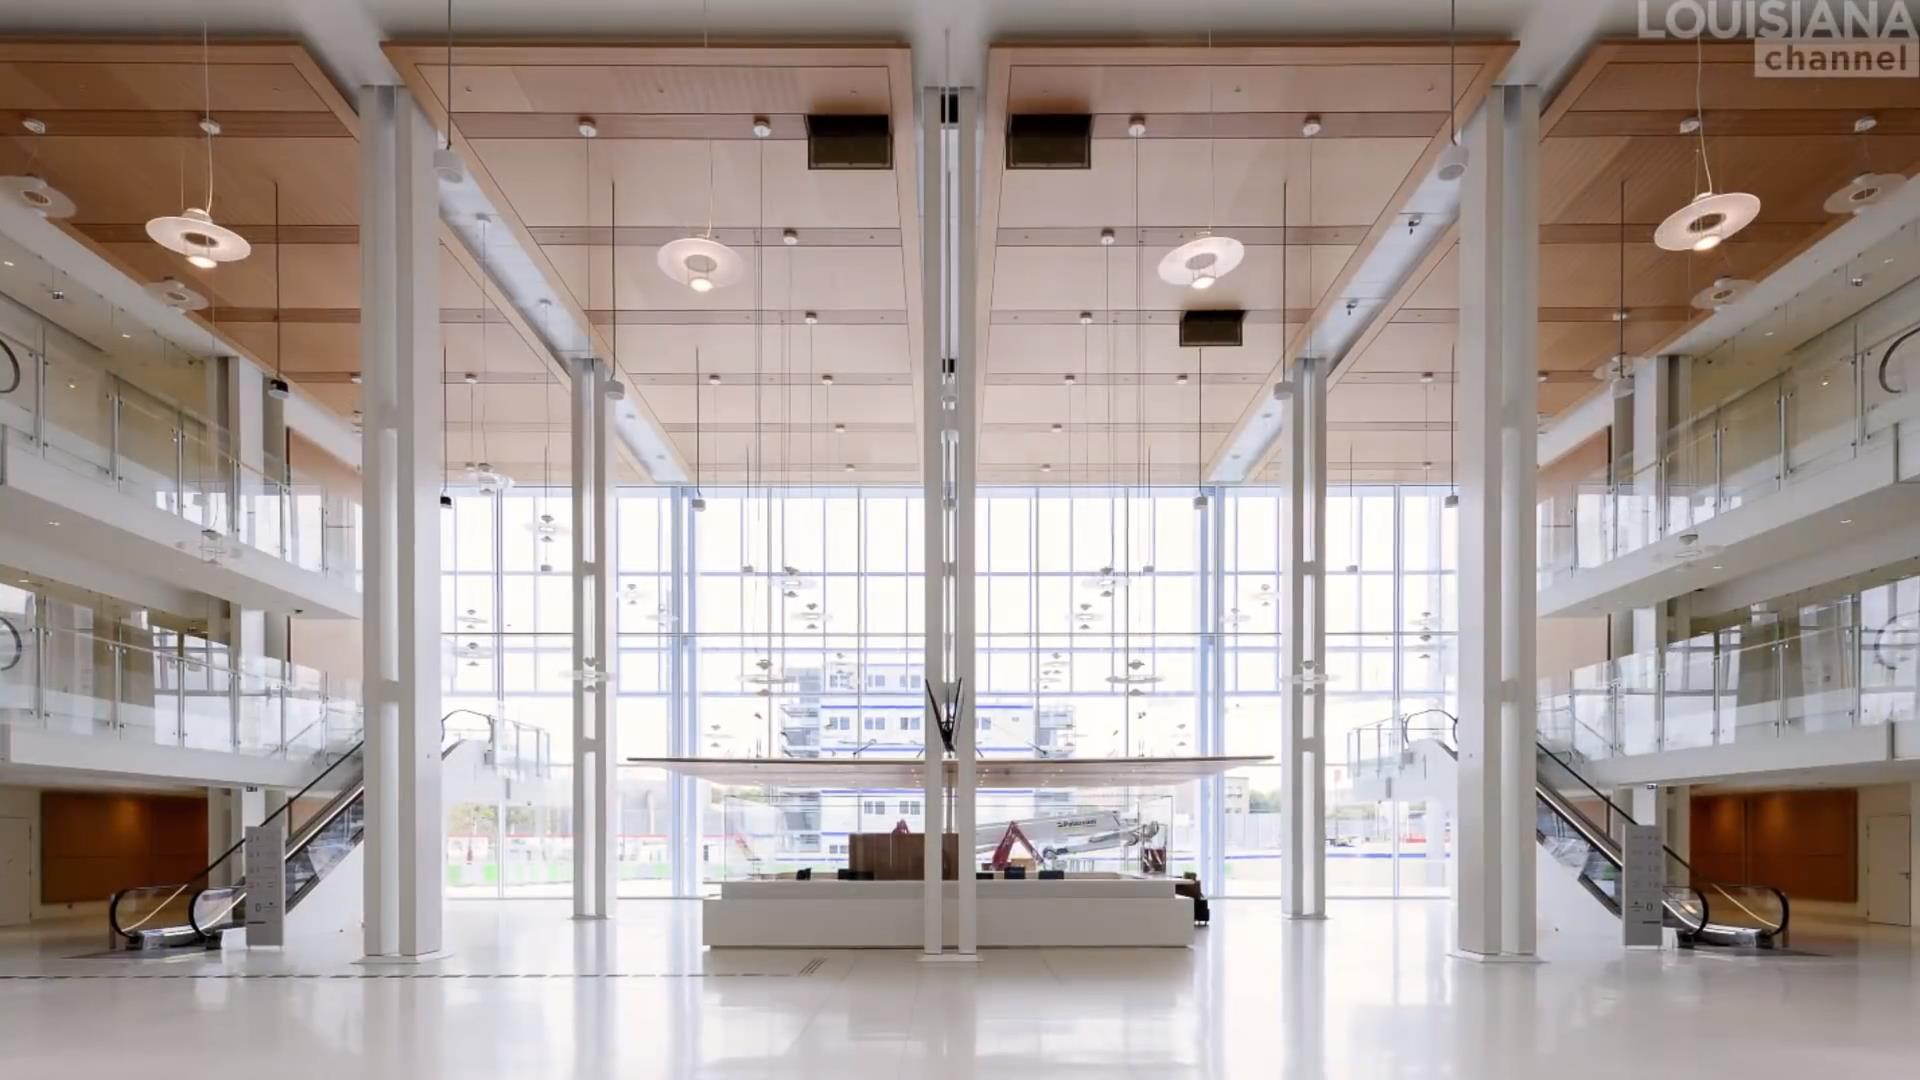 倫佐·皮亞諾,Renzo Piano,倫佐·皮亞諾作品,建築大師視頻,倫佐·皮亞諾訪談,普利茲克獎建築大師,蓬皮杜藝術中心,日本關西國際機場,提巴歐文化中心,波茨坦廣場改造